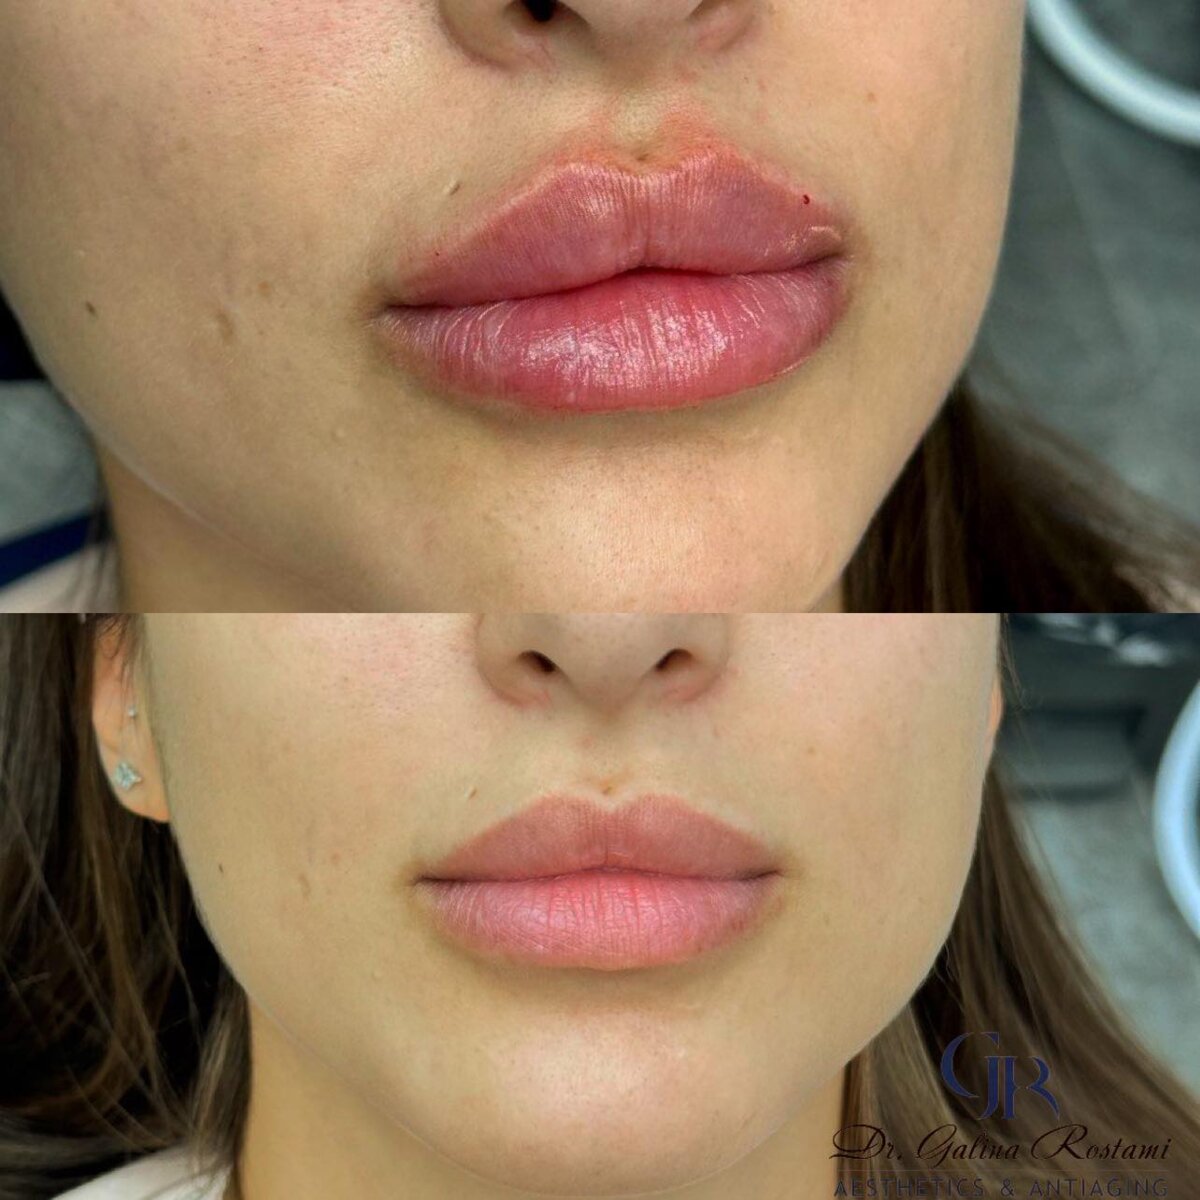 ד"ר גלינה רוסטמי - עיצוב שפתיים בחומצה היאלורונית